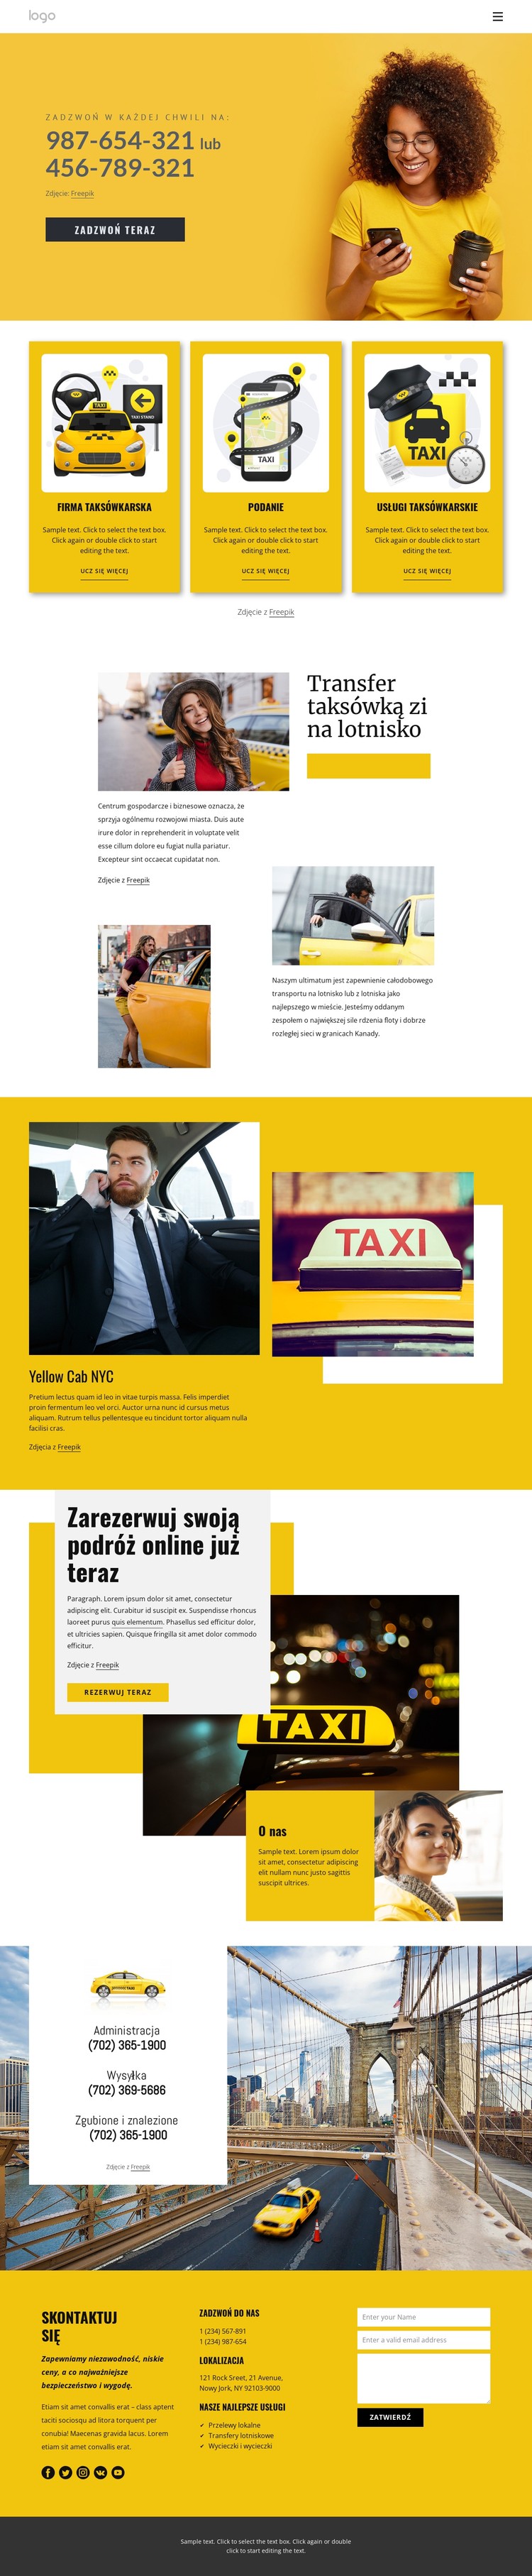 Jakość usług taksówkowych Szablon CSS